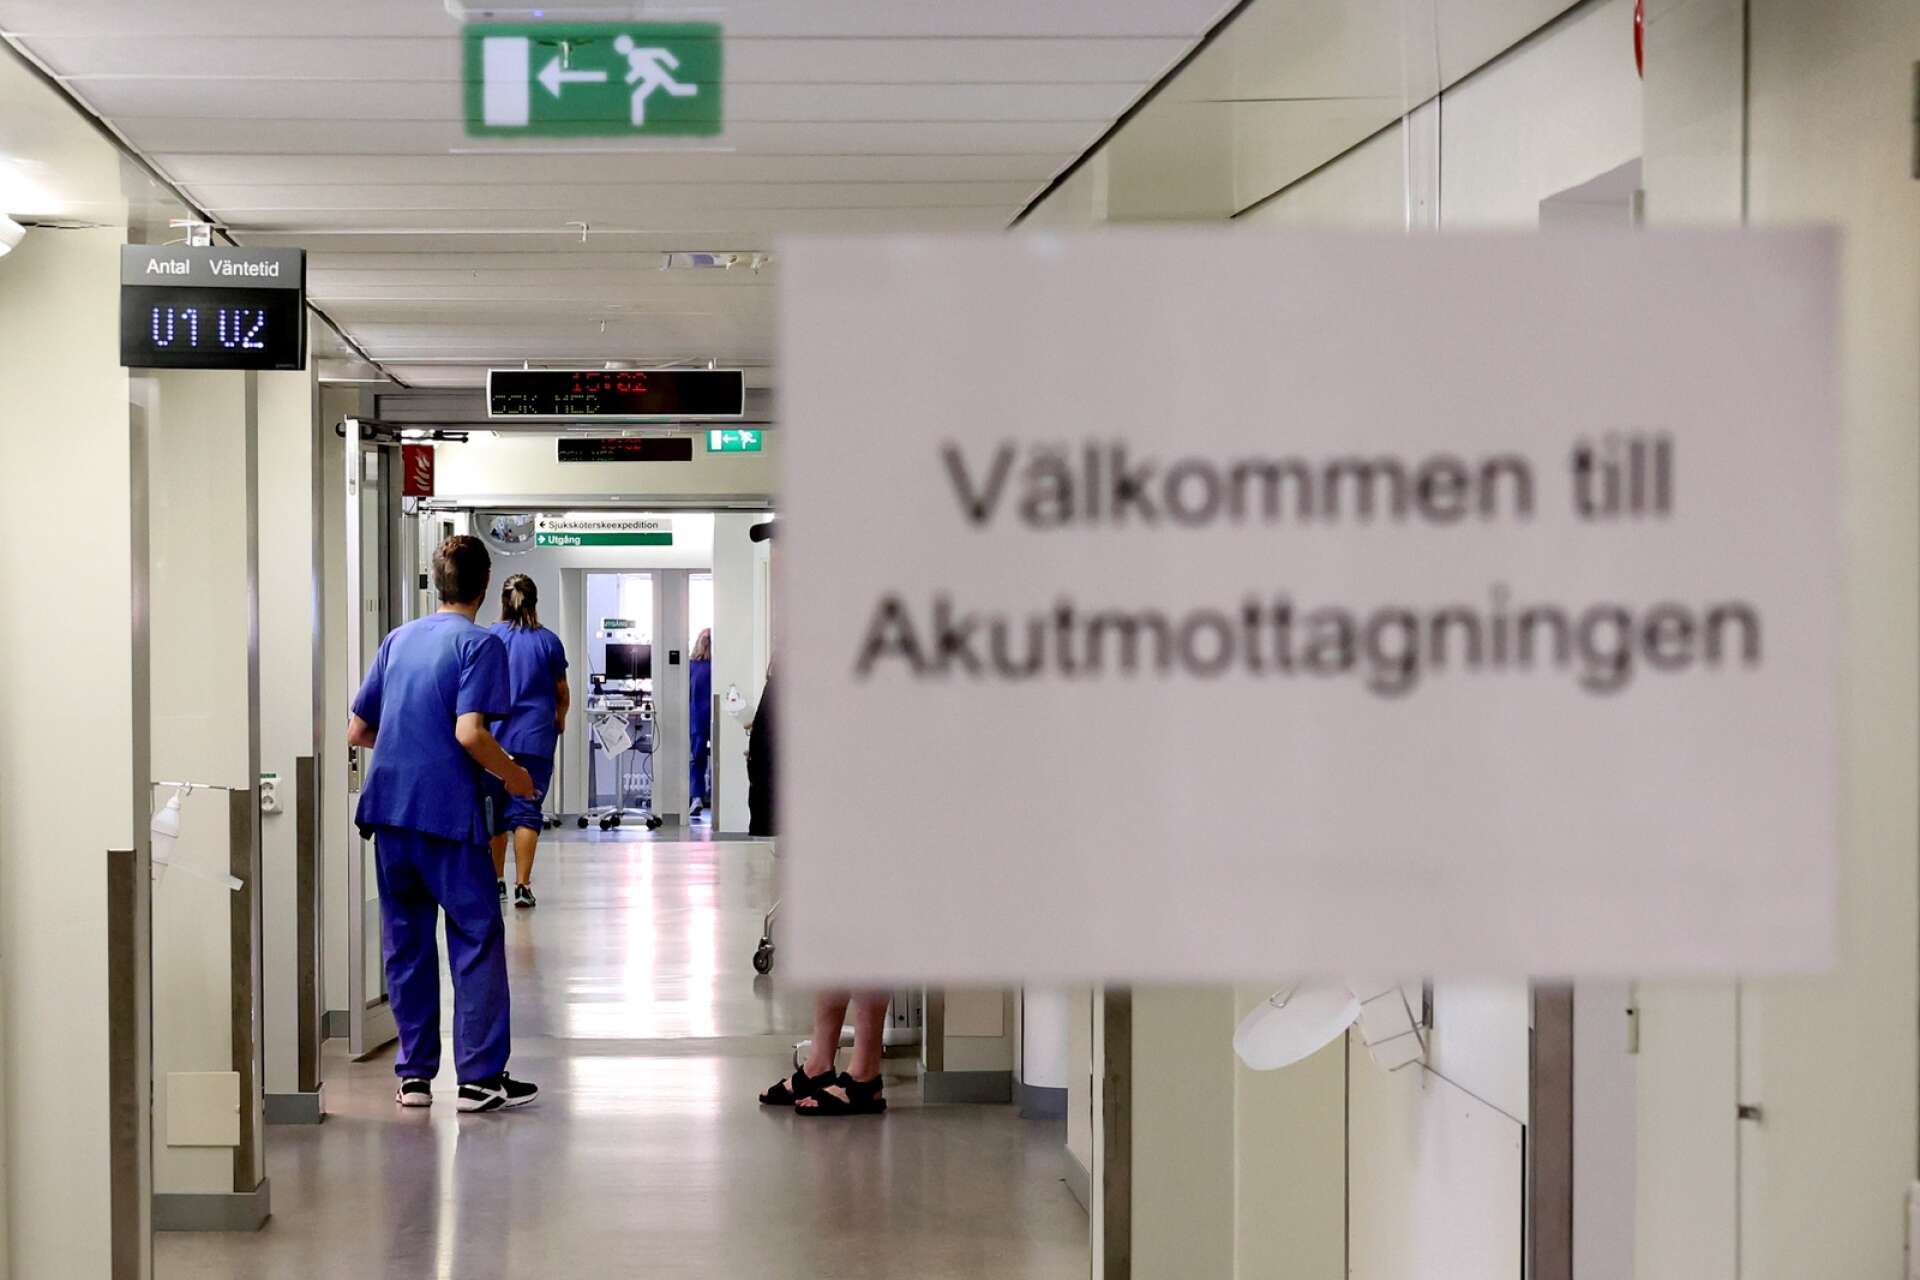 En utredning om förutsättningarna om vårdsamarbete mellan Lidköpings kommun och Västra Götalandsregionen ska påbörjas, menar politikerna i kommunen – oavsett signaler om att en akutmottagning inte skulle ingå i konceptet eller inte.